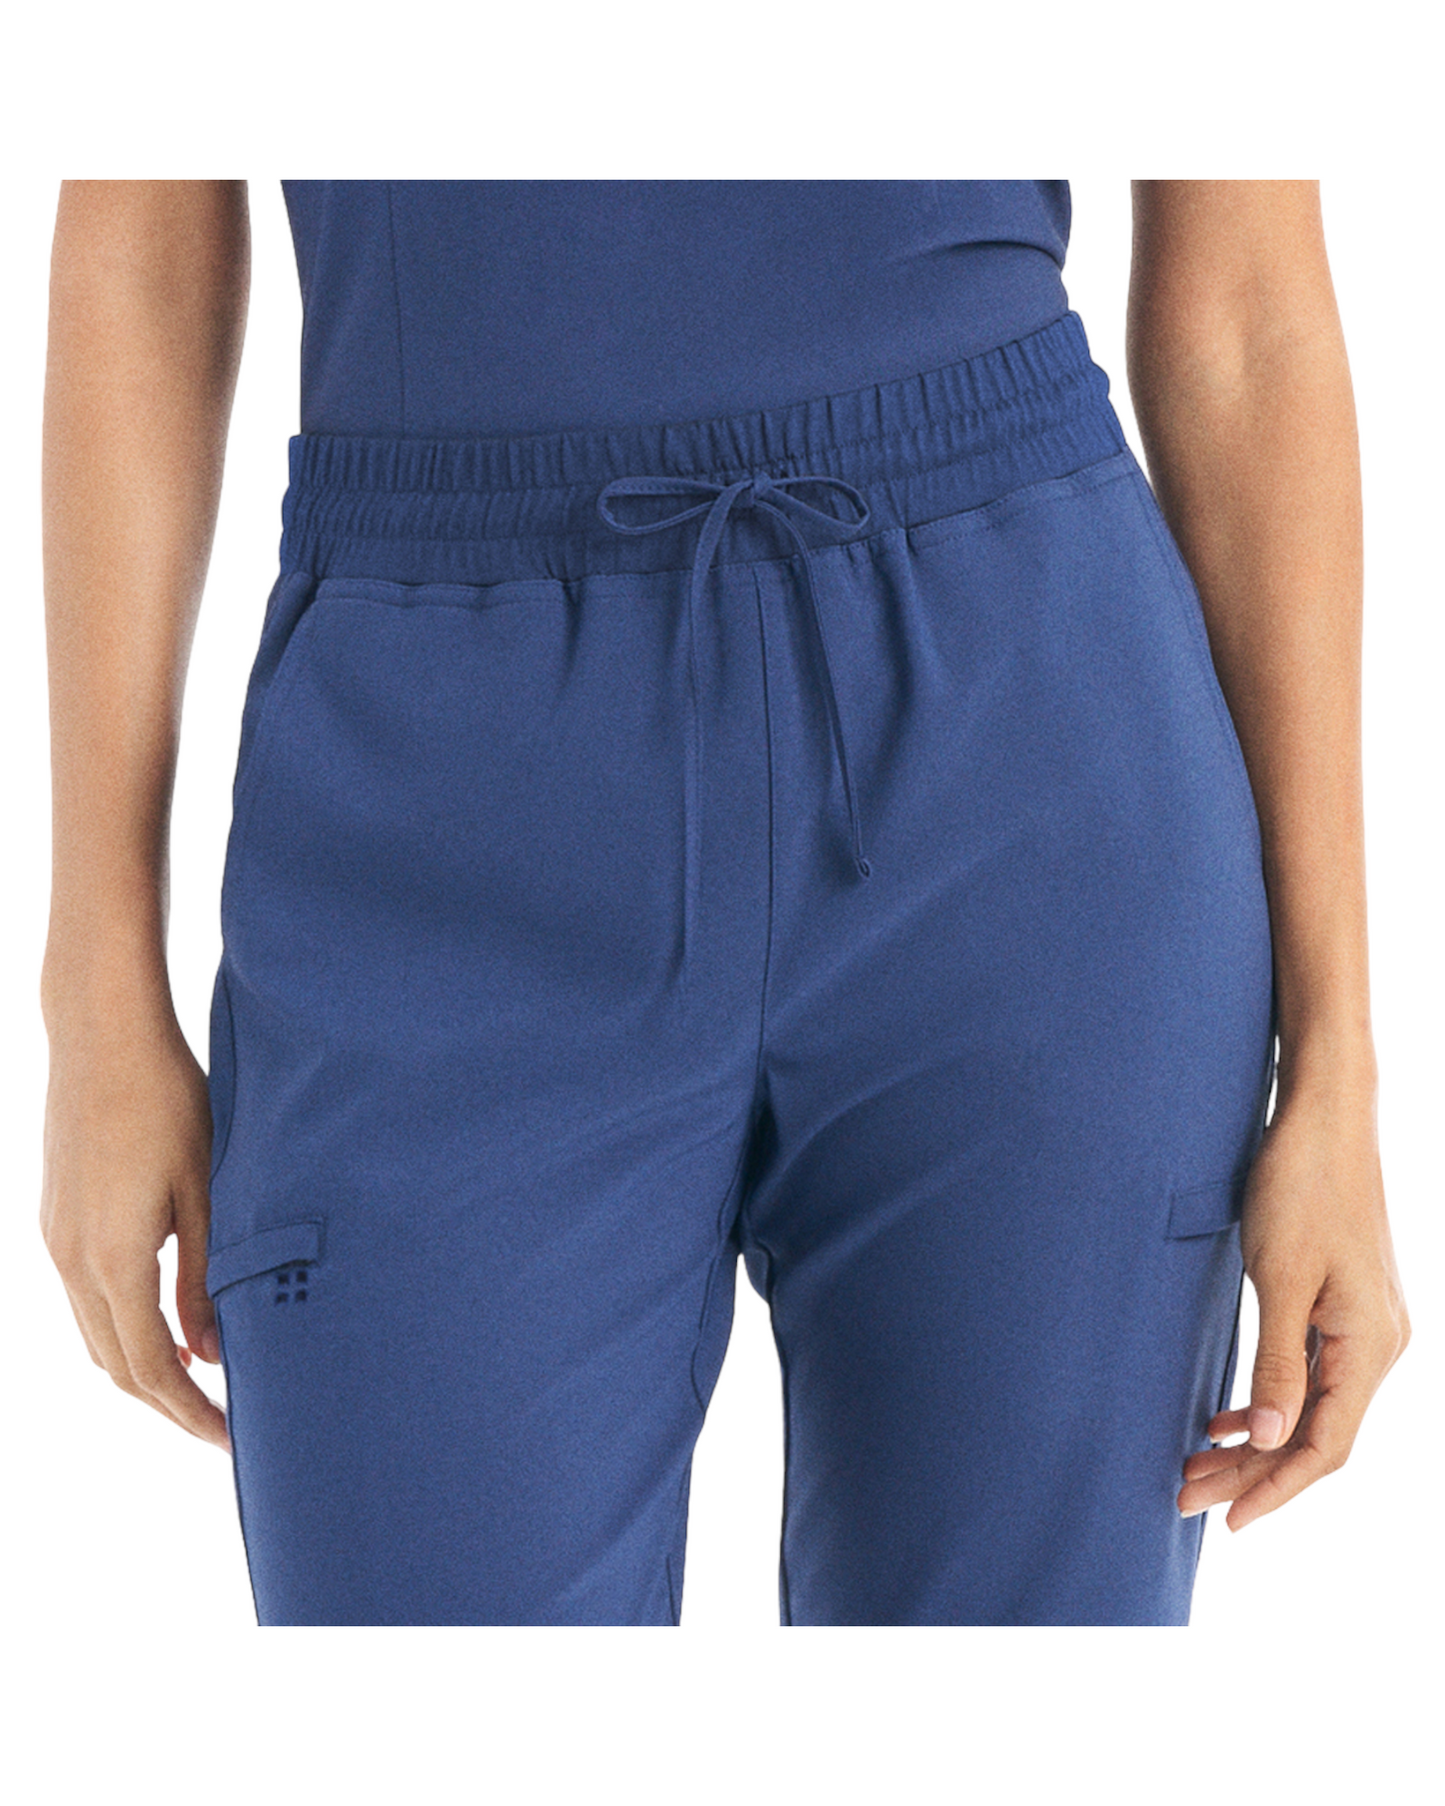 Pantalon de travail jogger hybride 6 poches pour femme White Cross CRFT #WB415 OS vue taille avant couleur Marine